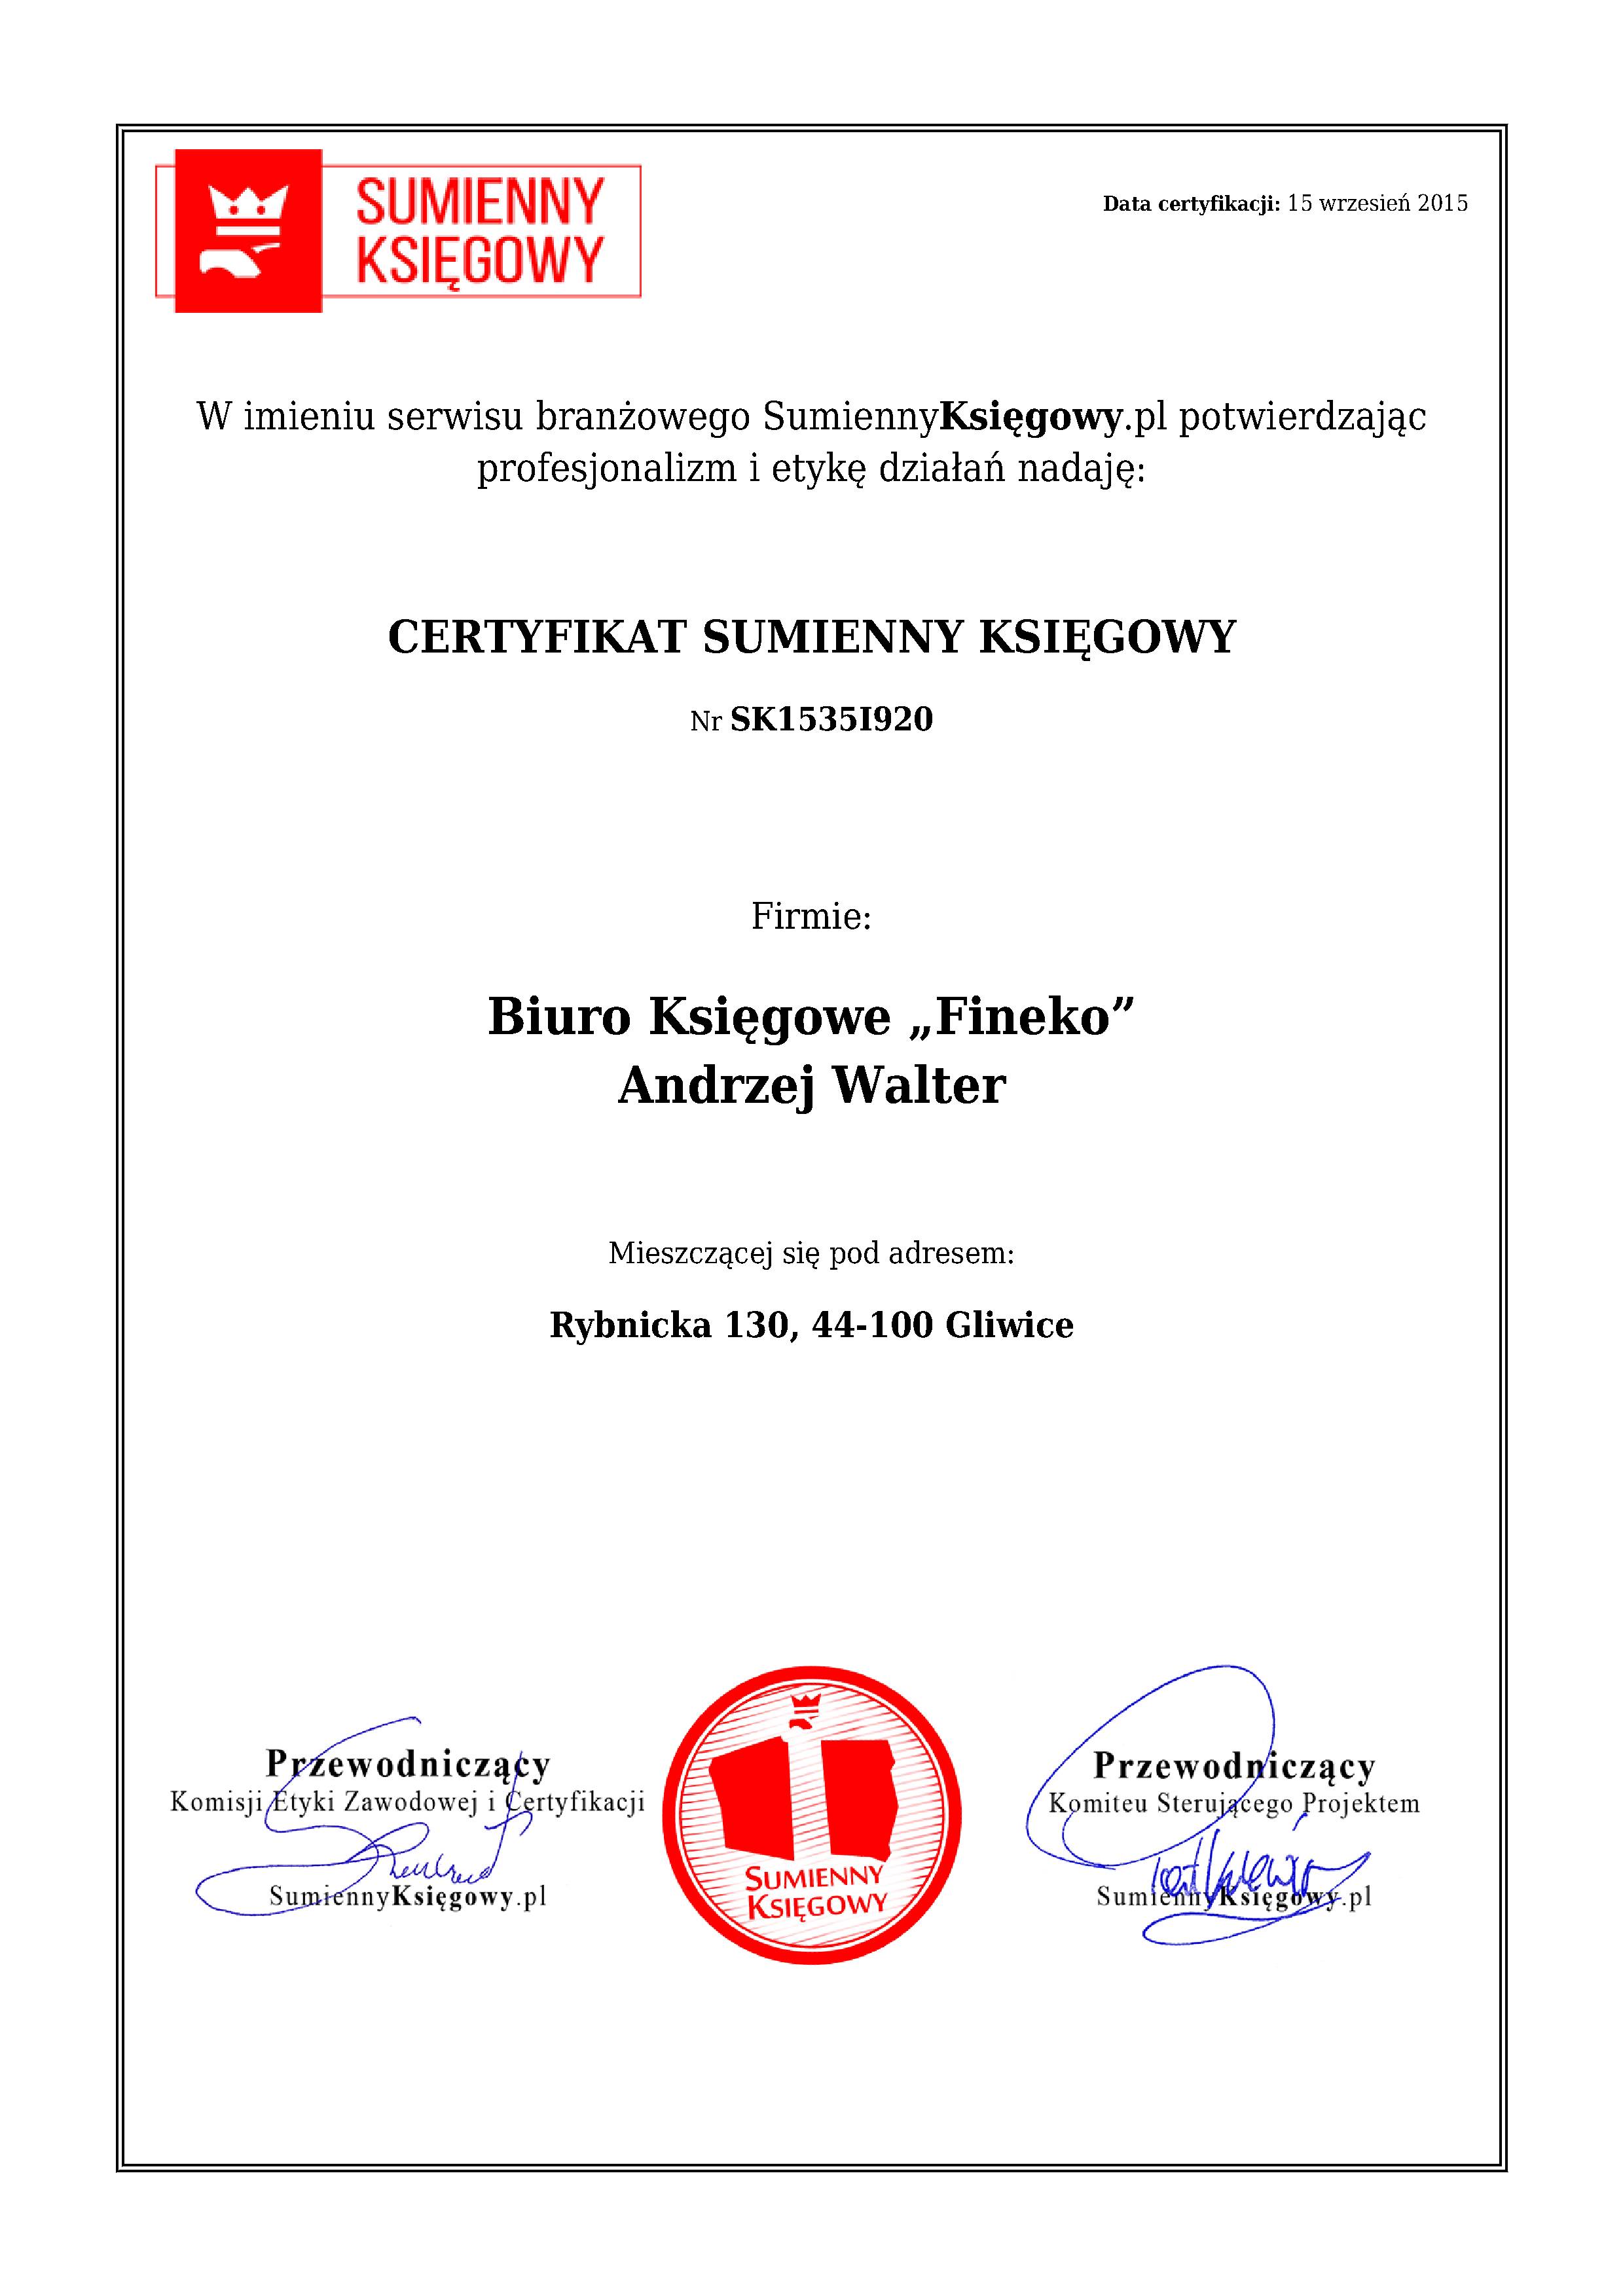 Biuro Księgowe „Fineko” Andrzej Walter certyfikat 1